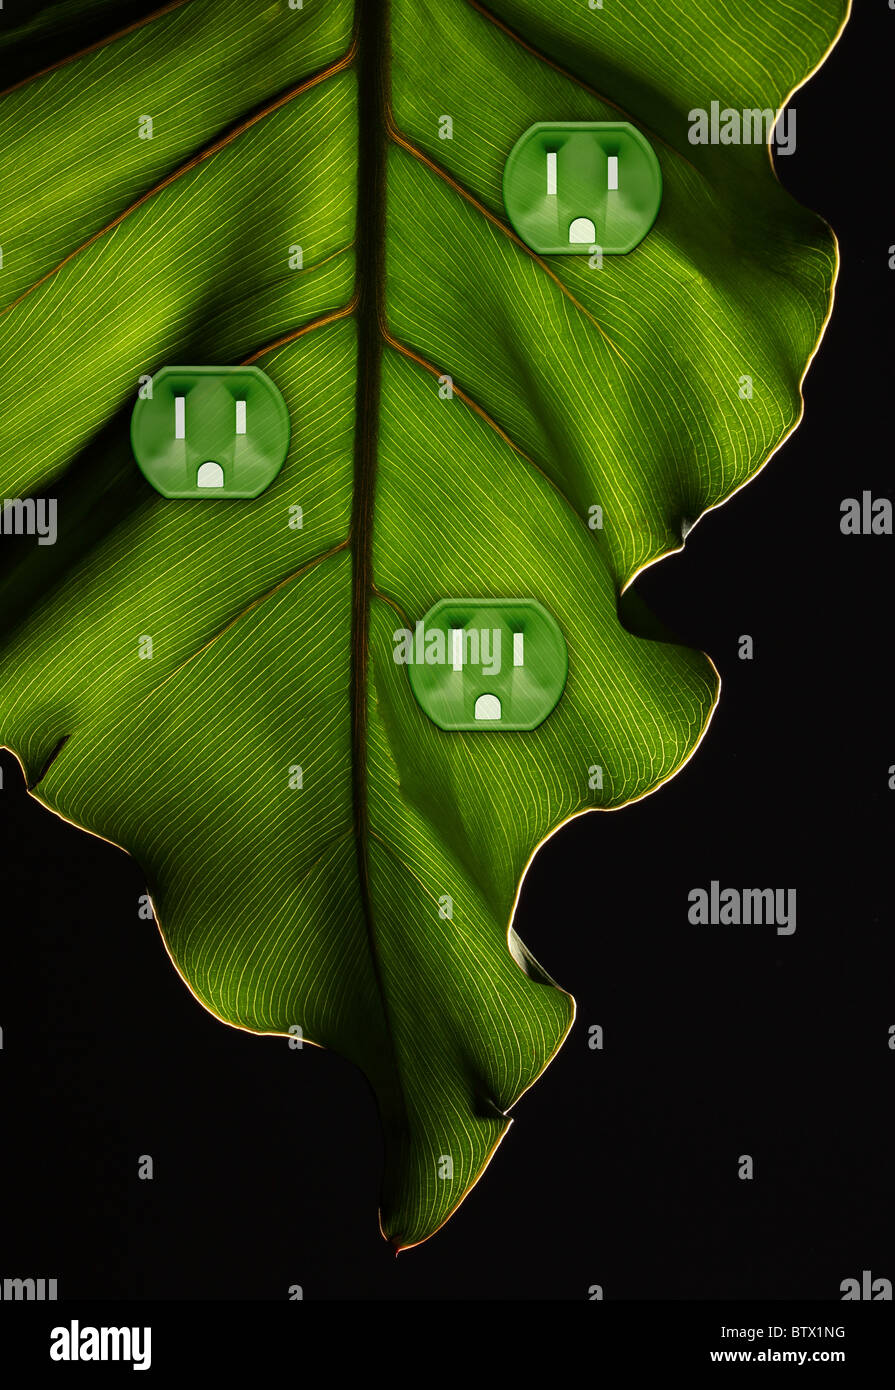 Une plante verte feuille avec trois prises d'alimentation électrique Banque D'Images